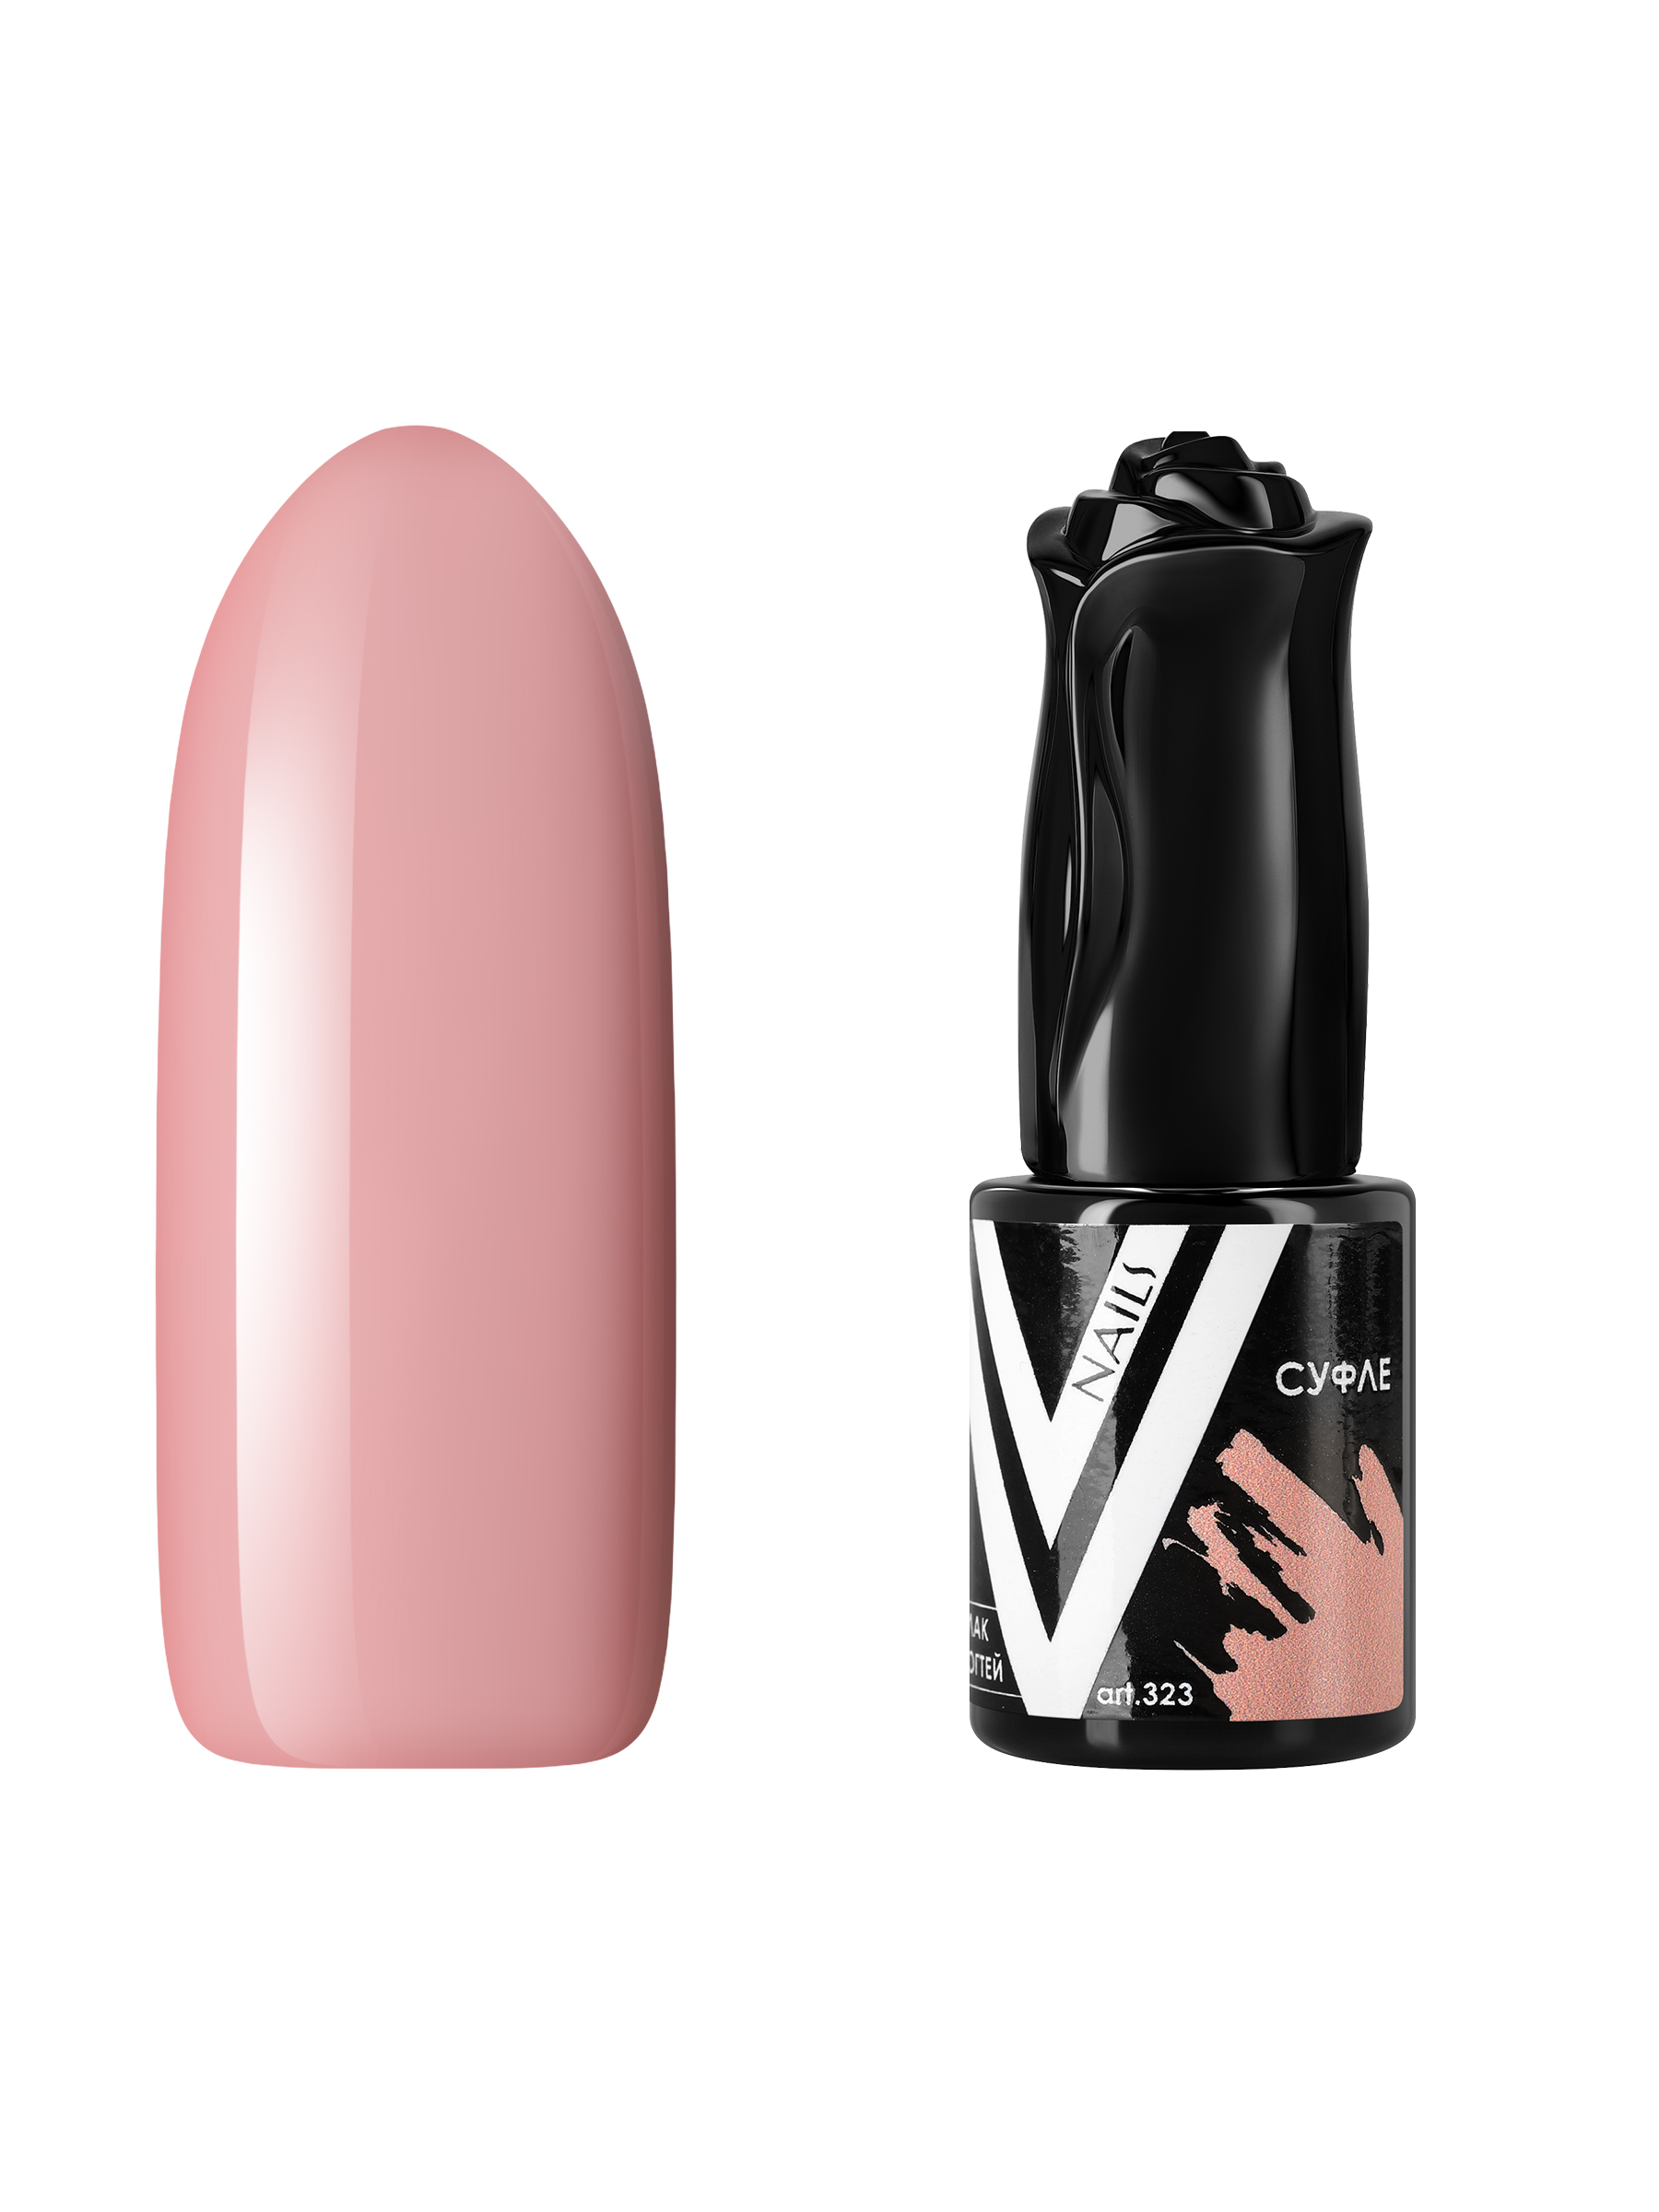 Гель-лак для ногтей Vogue Nails плотный, самовыравнивающийся, светлый, бежевый, 10 мл iva nails гель лак nude thermo